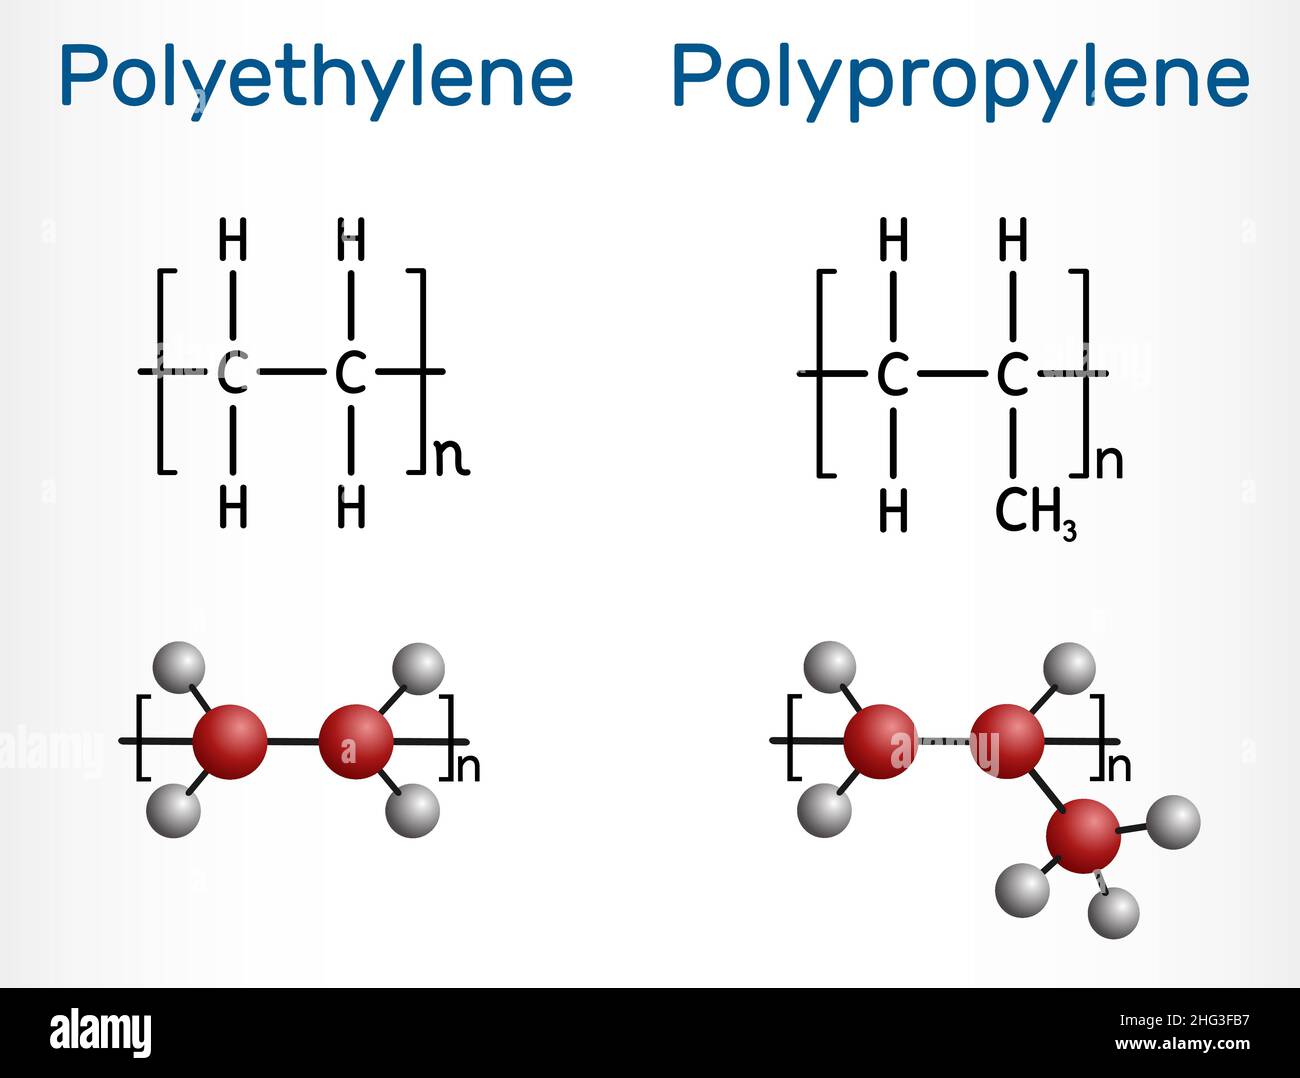 Molekül aus Polypropylen (PP, Polypropen) und Polyethylen (Polyethylen, PE,  Polyethylen). Strukturelle chemische Formel und Molekülmodell von  Polymeren. Vec Stock-Vektorgrafik - Alamy